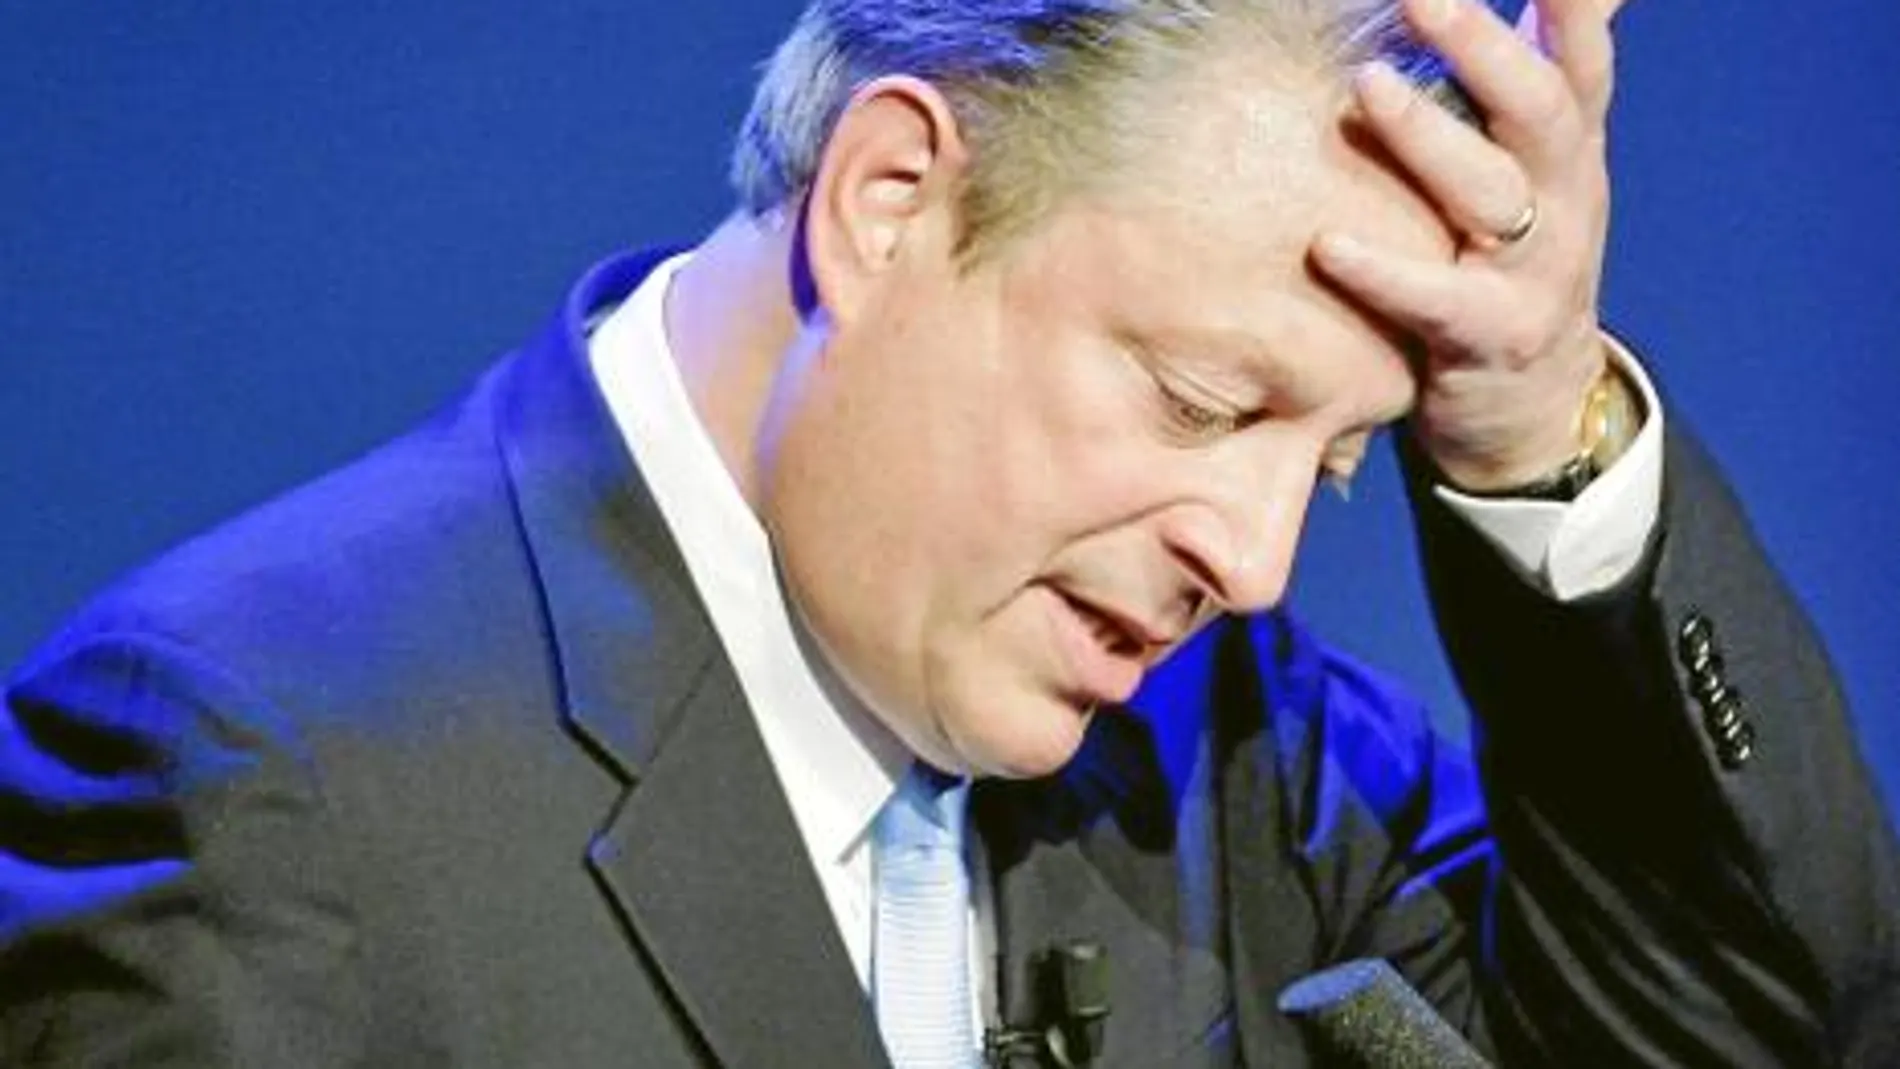 Una masajista acusa al ex vicepresidente Al Gore de acosarla en 2006